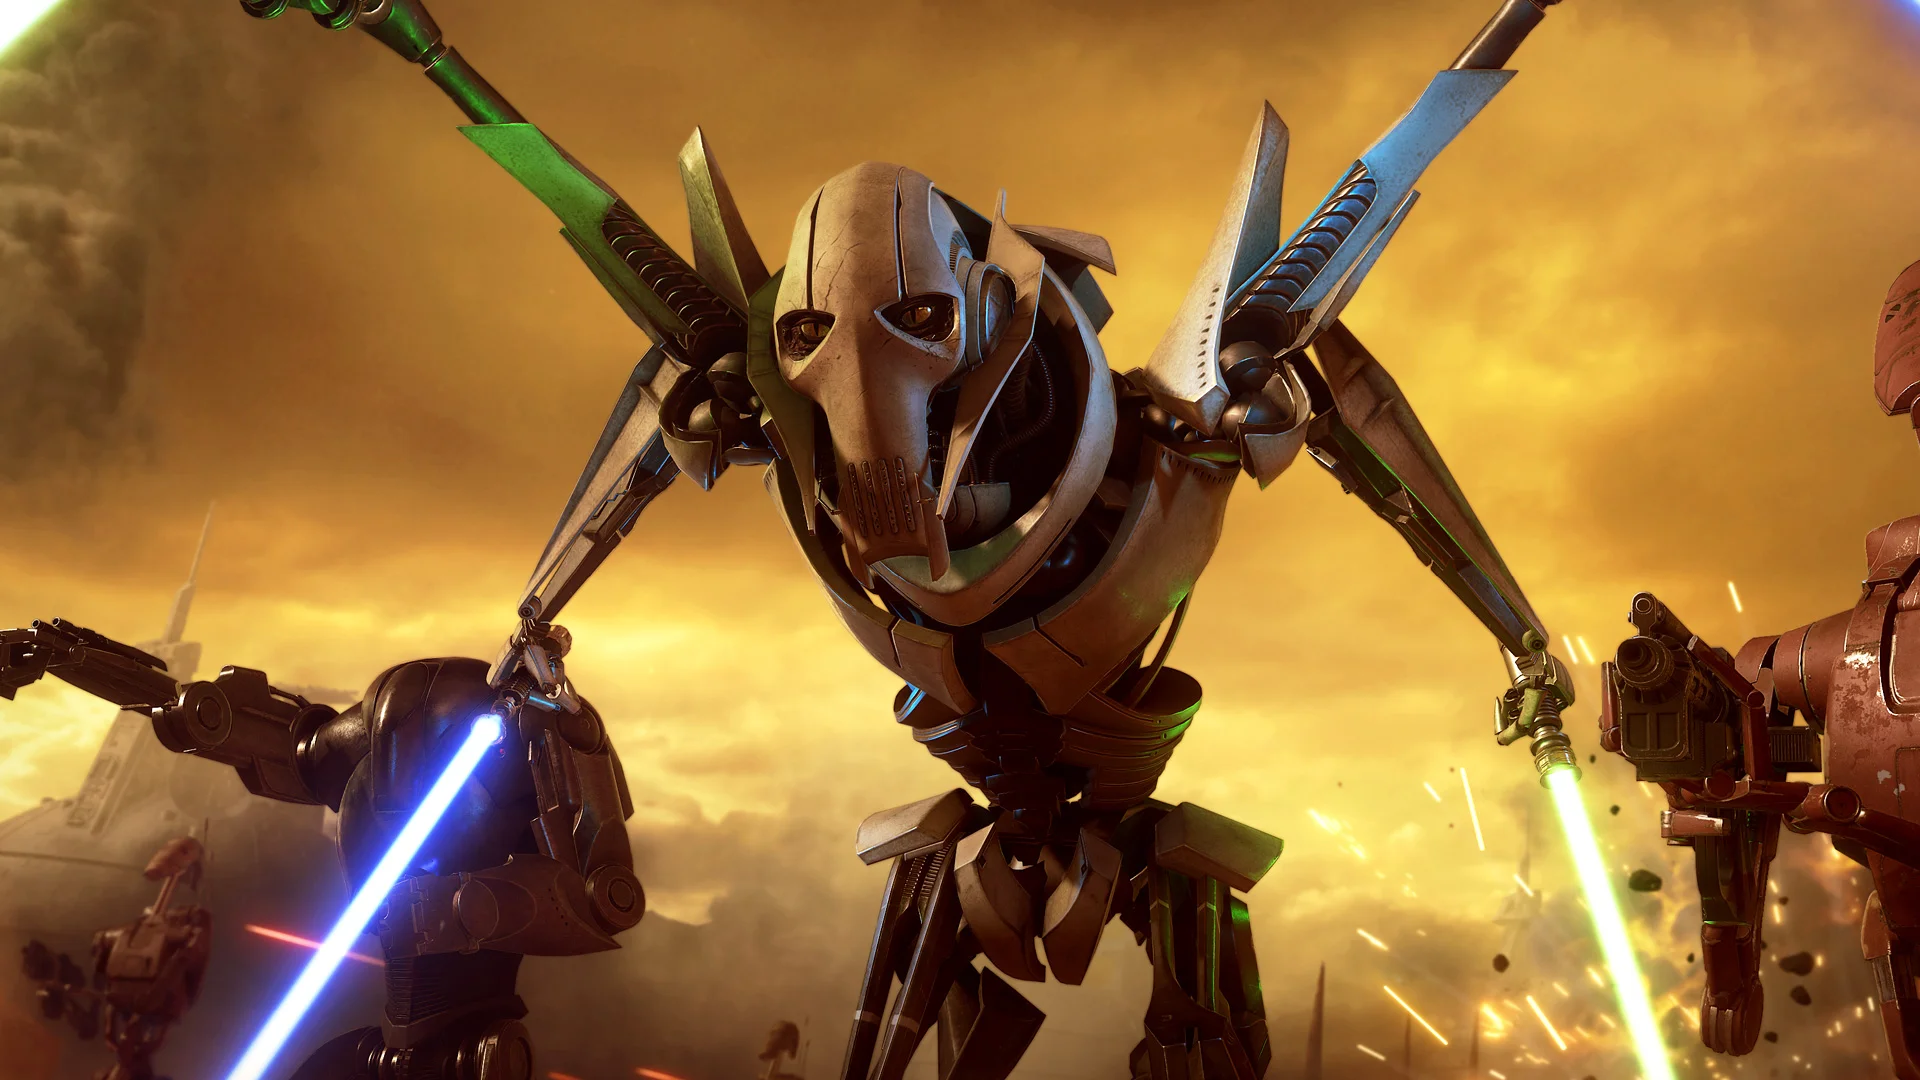 СМИ: Electronic Arts отменила игру по «Звездным войнам» с открытым миром (Обновлено) - фото 1